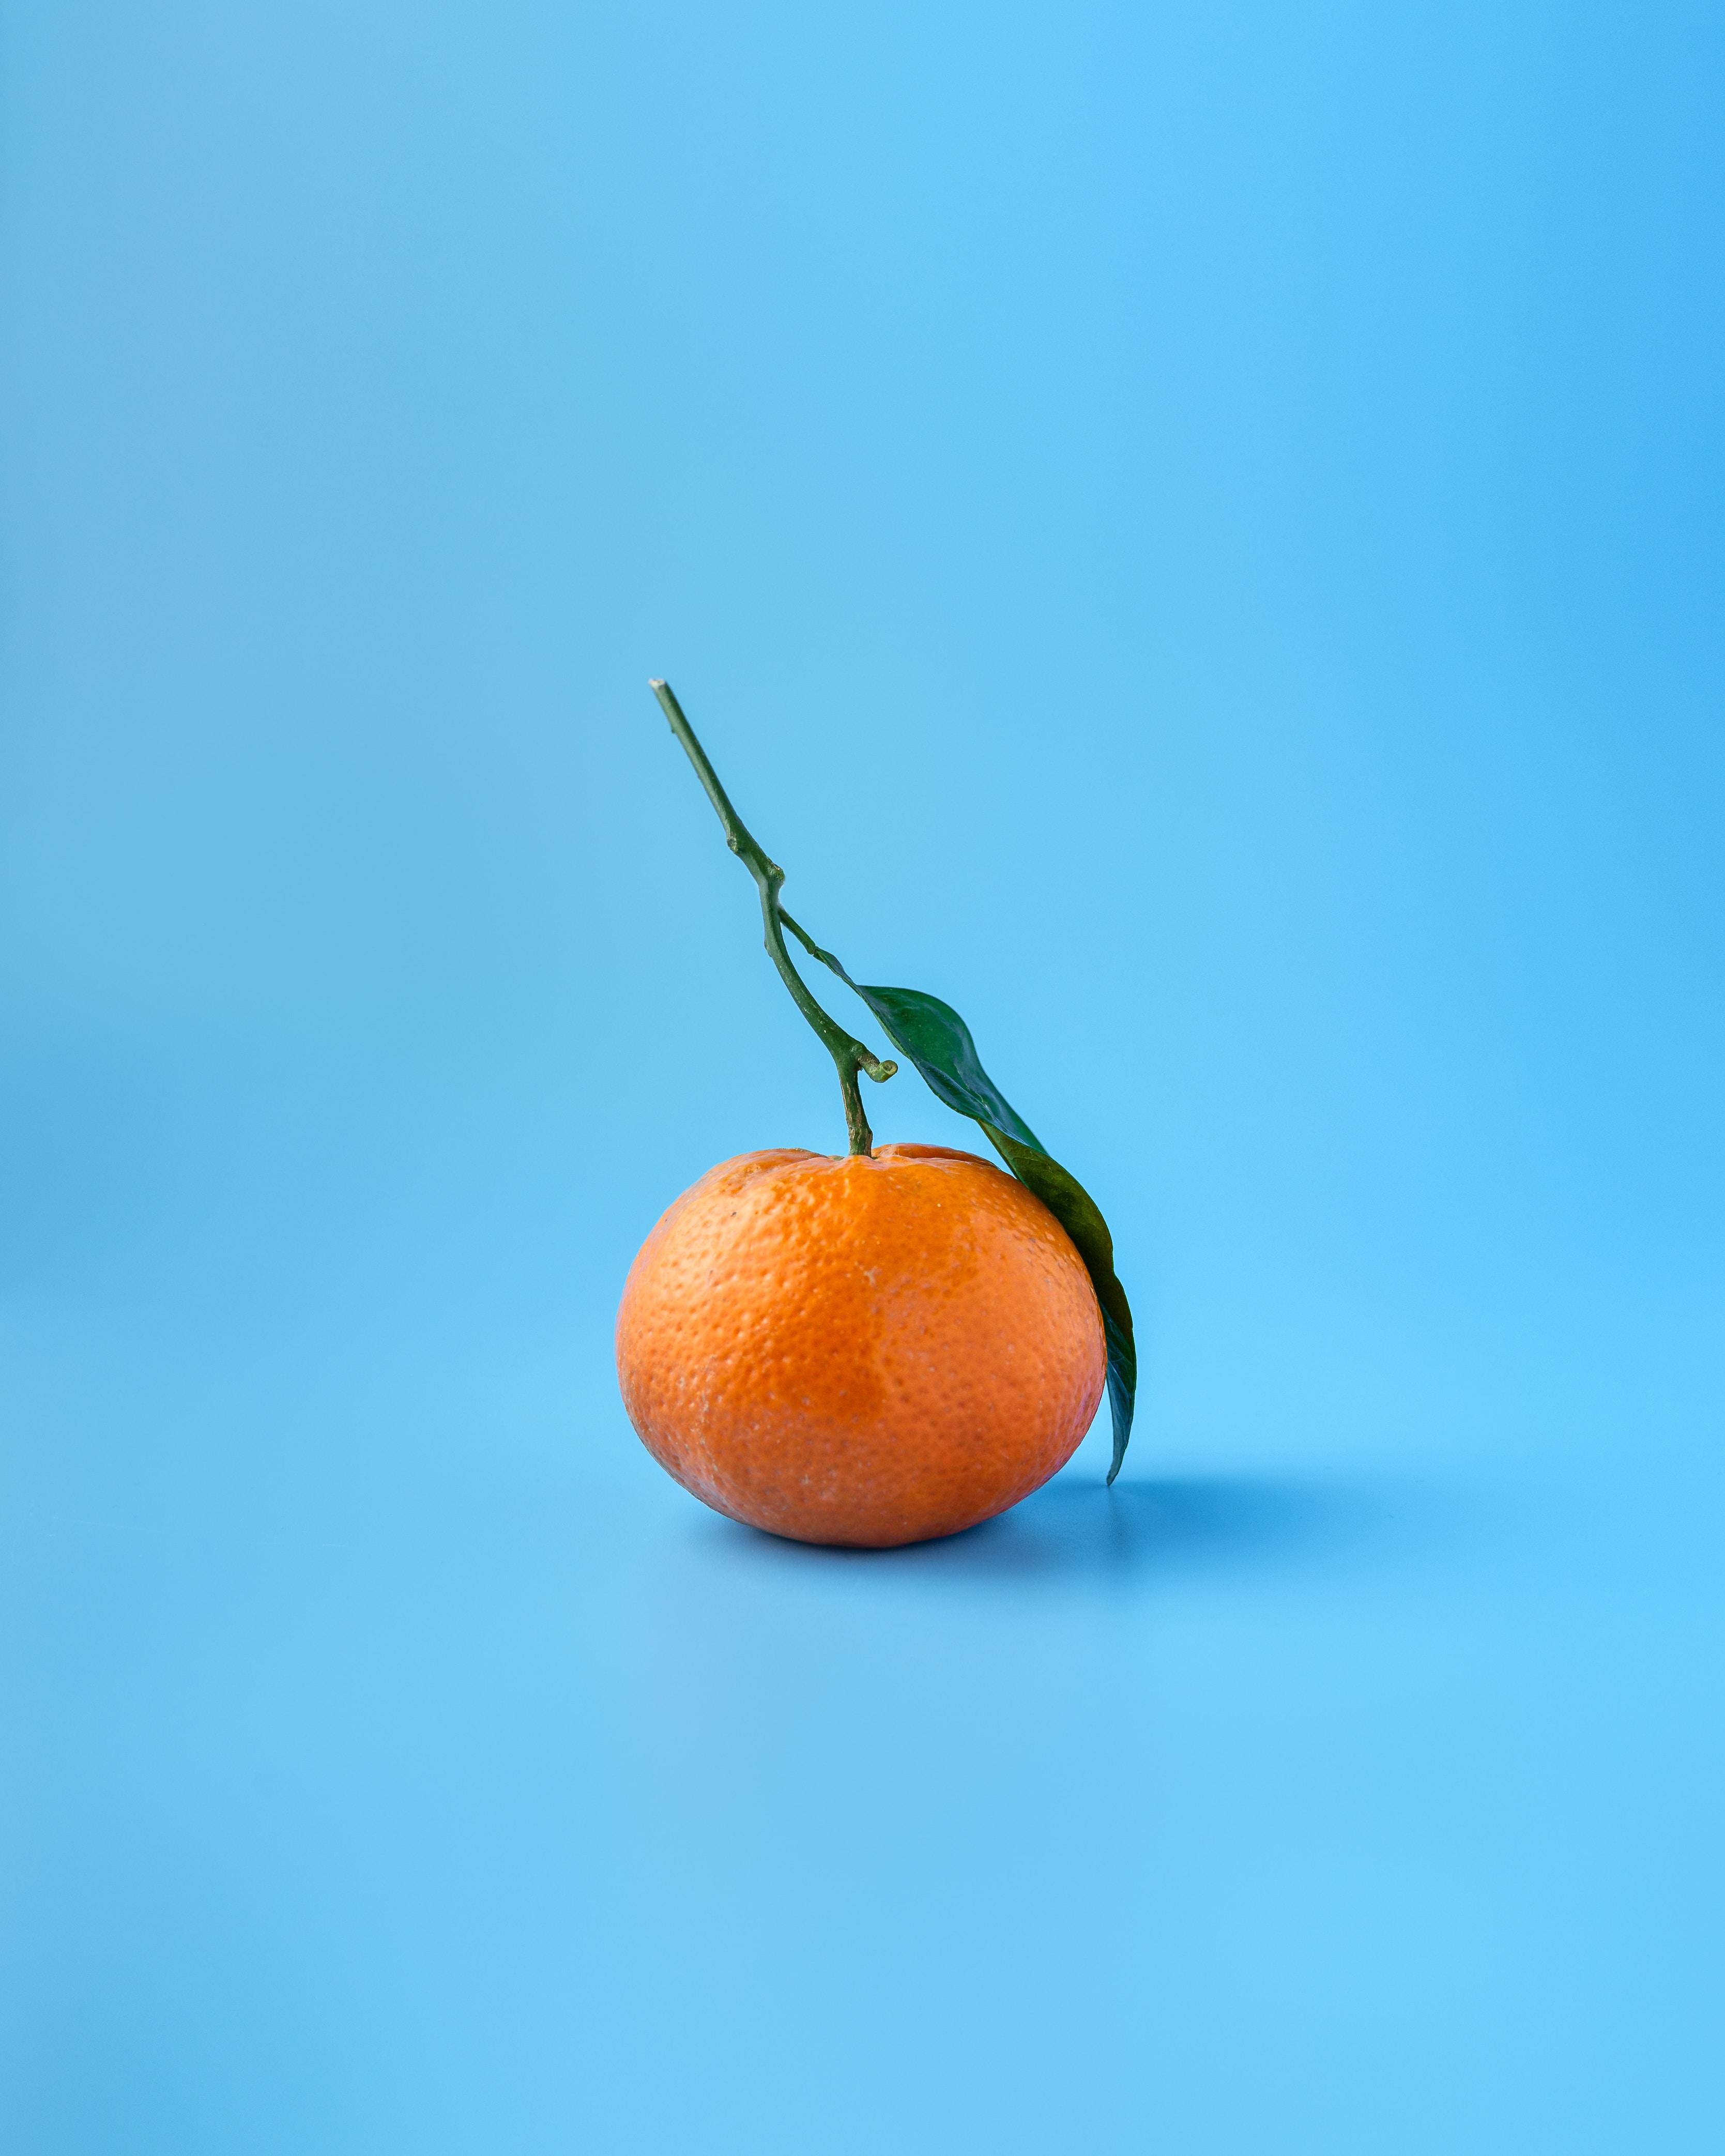 Czy pomarańcze mają najwięcej witaminy C? Właściwości zdrowotne pomarańczy. Pomarańcze - wartości odżywcze. Dlaczego warto jeść pomarańcze? Co kryje w sobie skórka pomarańczy? 